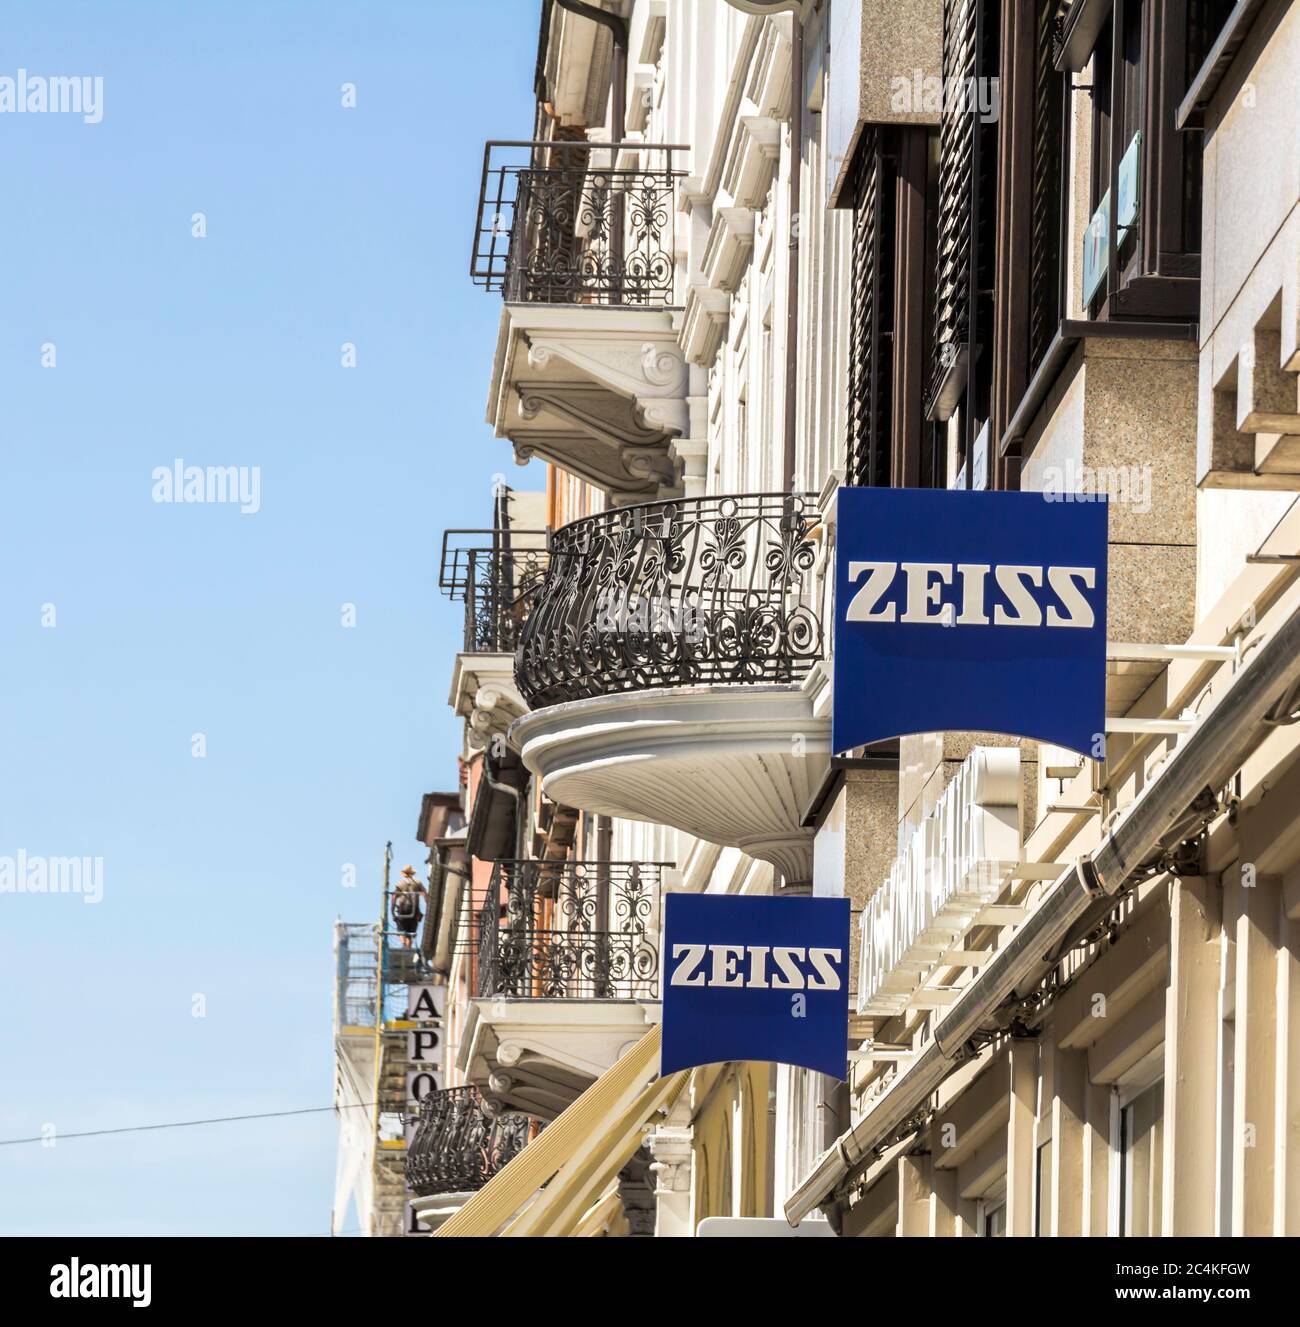 Heidelberg, Deutschland - 4. Juli 2019: Zeiss Zeichen. Carl Zeiss, unter dem Markennamen ZEISS, ist ein deutscher Hersteller von optischen Systemen und industriellen Messgeräten Stockfoto